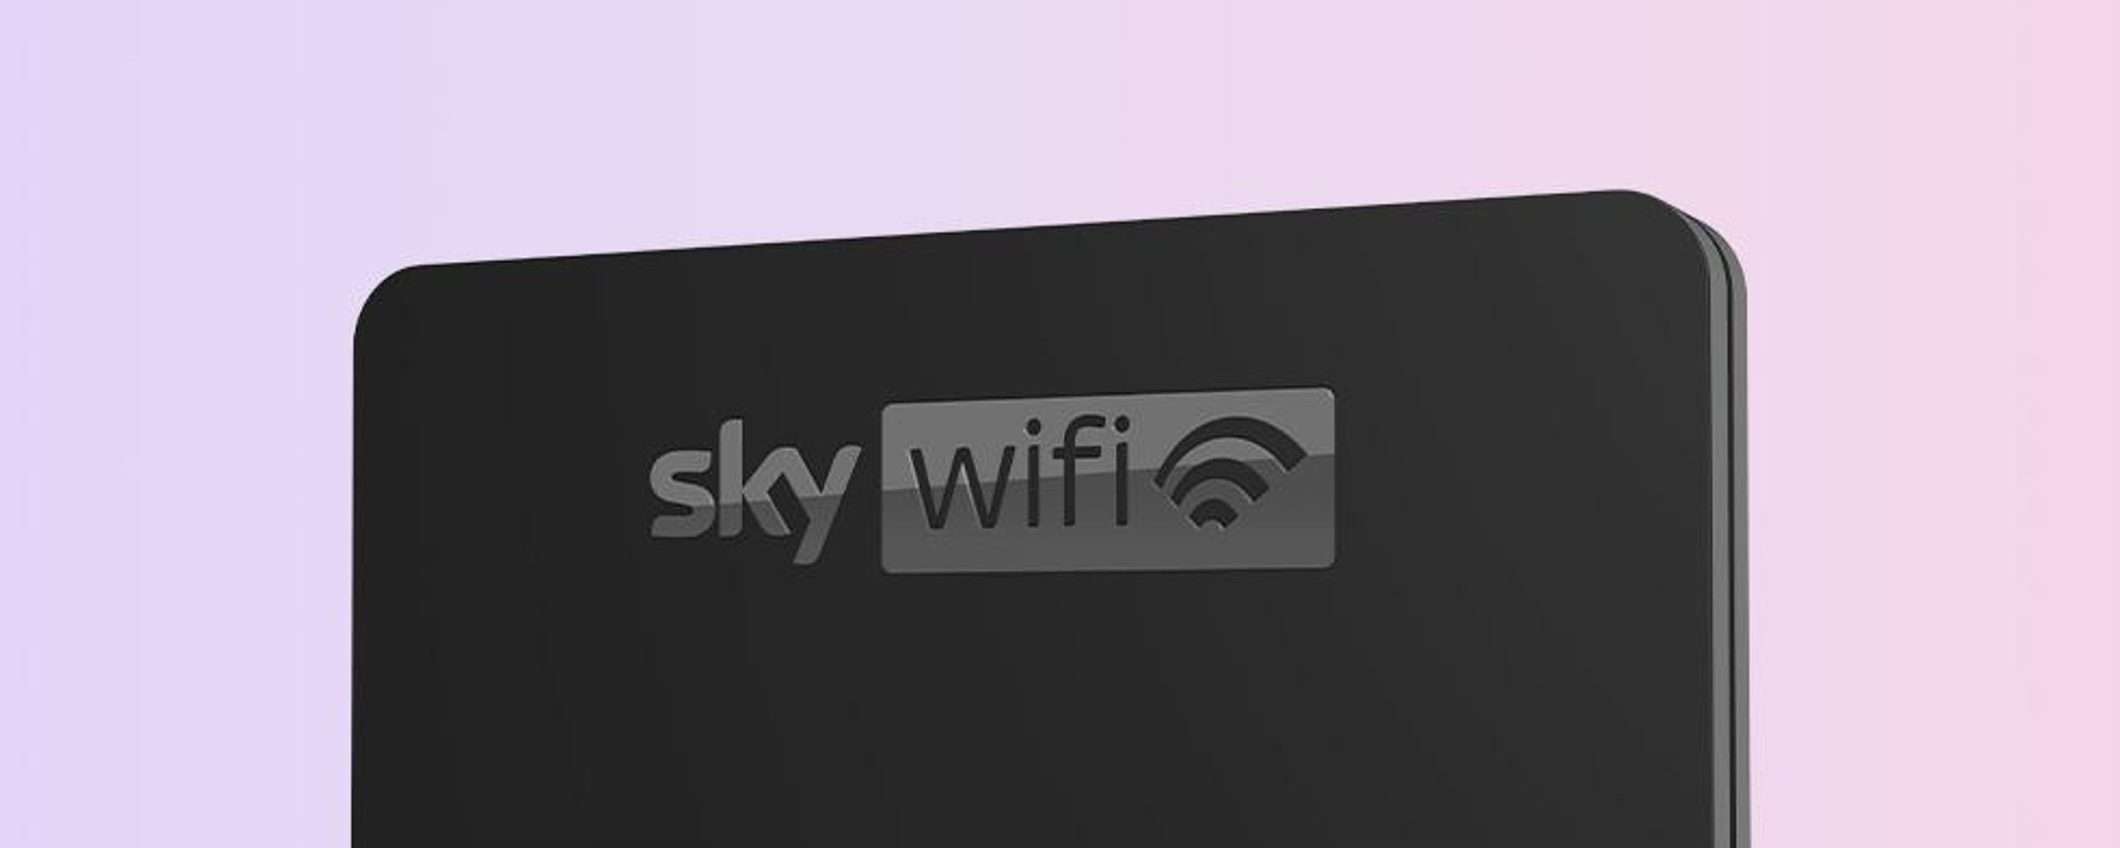 Offerta Sky WiFi: ottieni un Buono Amazon da 100€